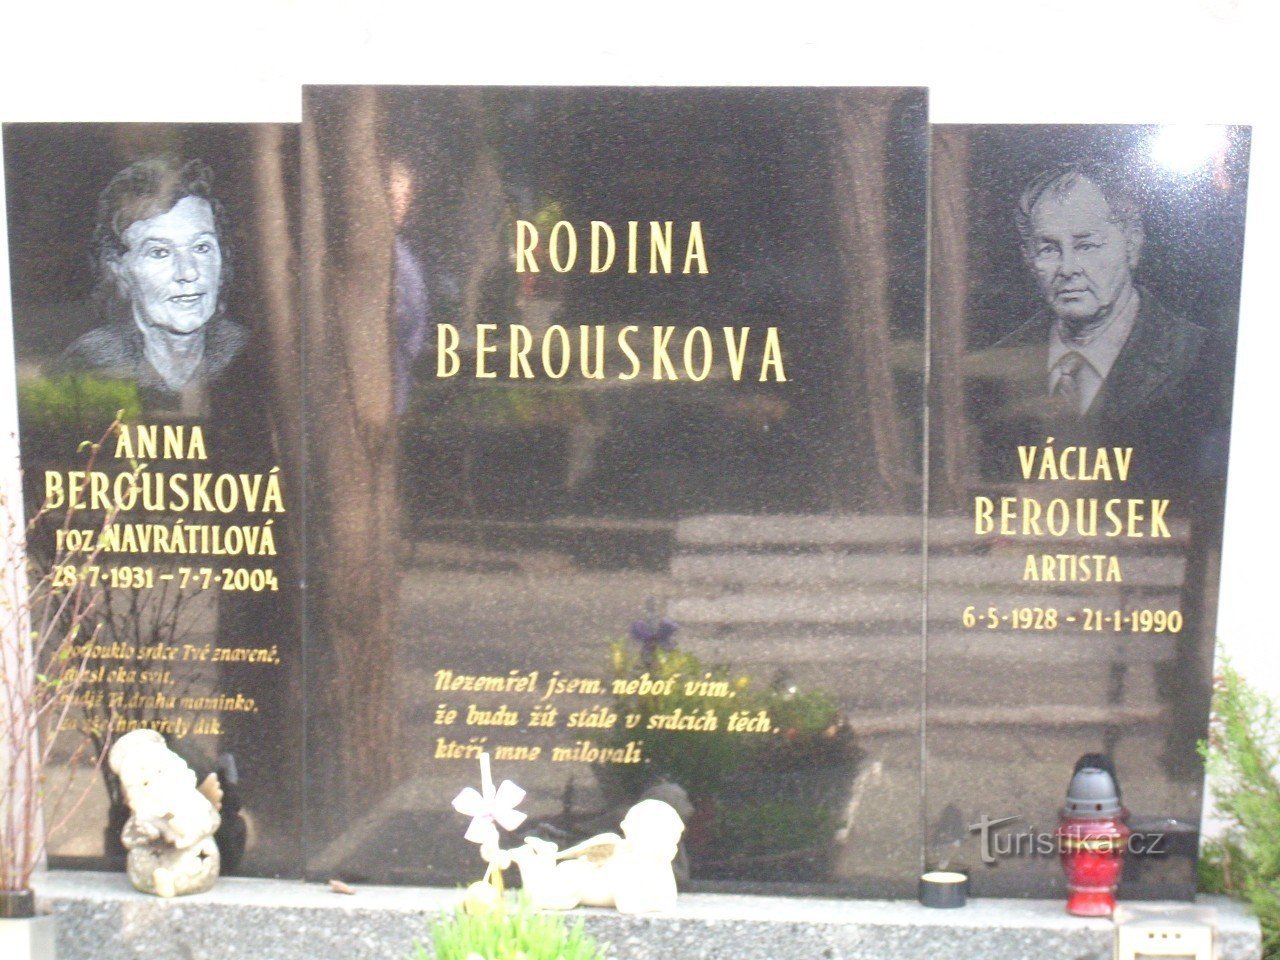 Familia Berouskov